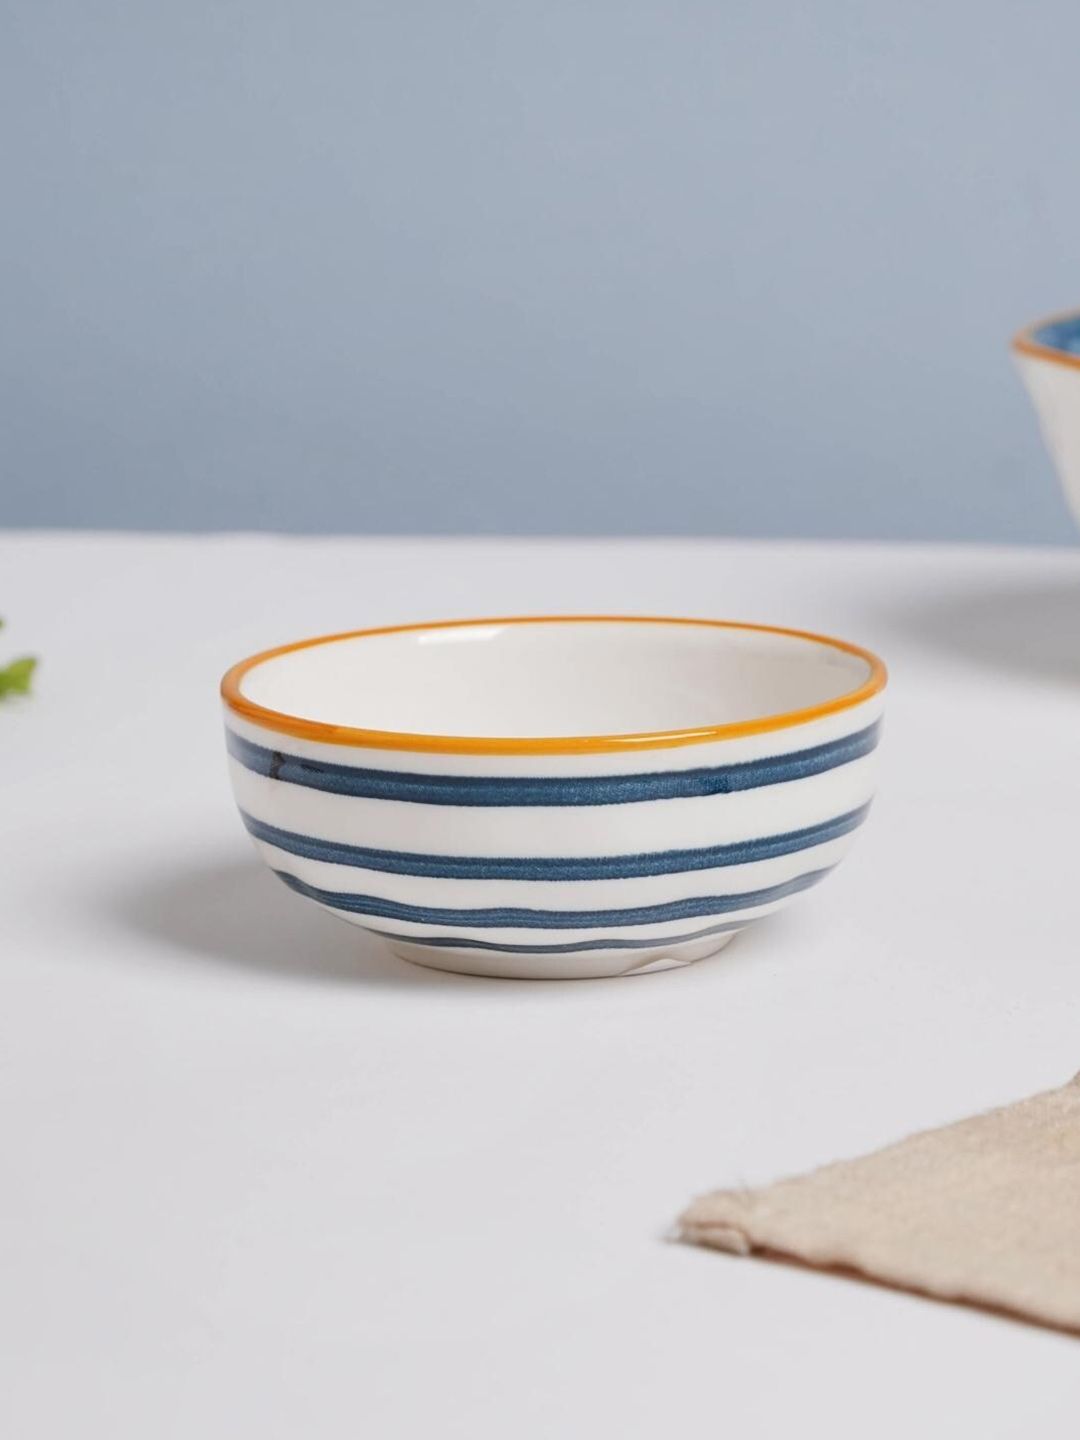 Nestasia White & Blue Printed Ceramic Small Snack Bowl Price in India